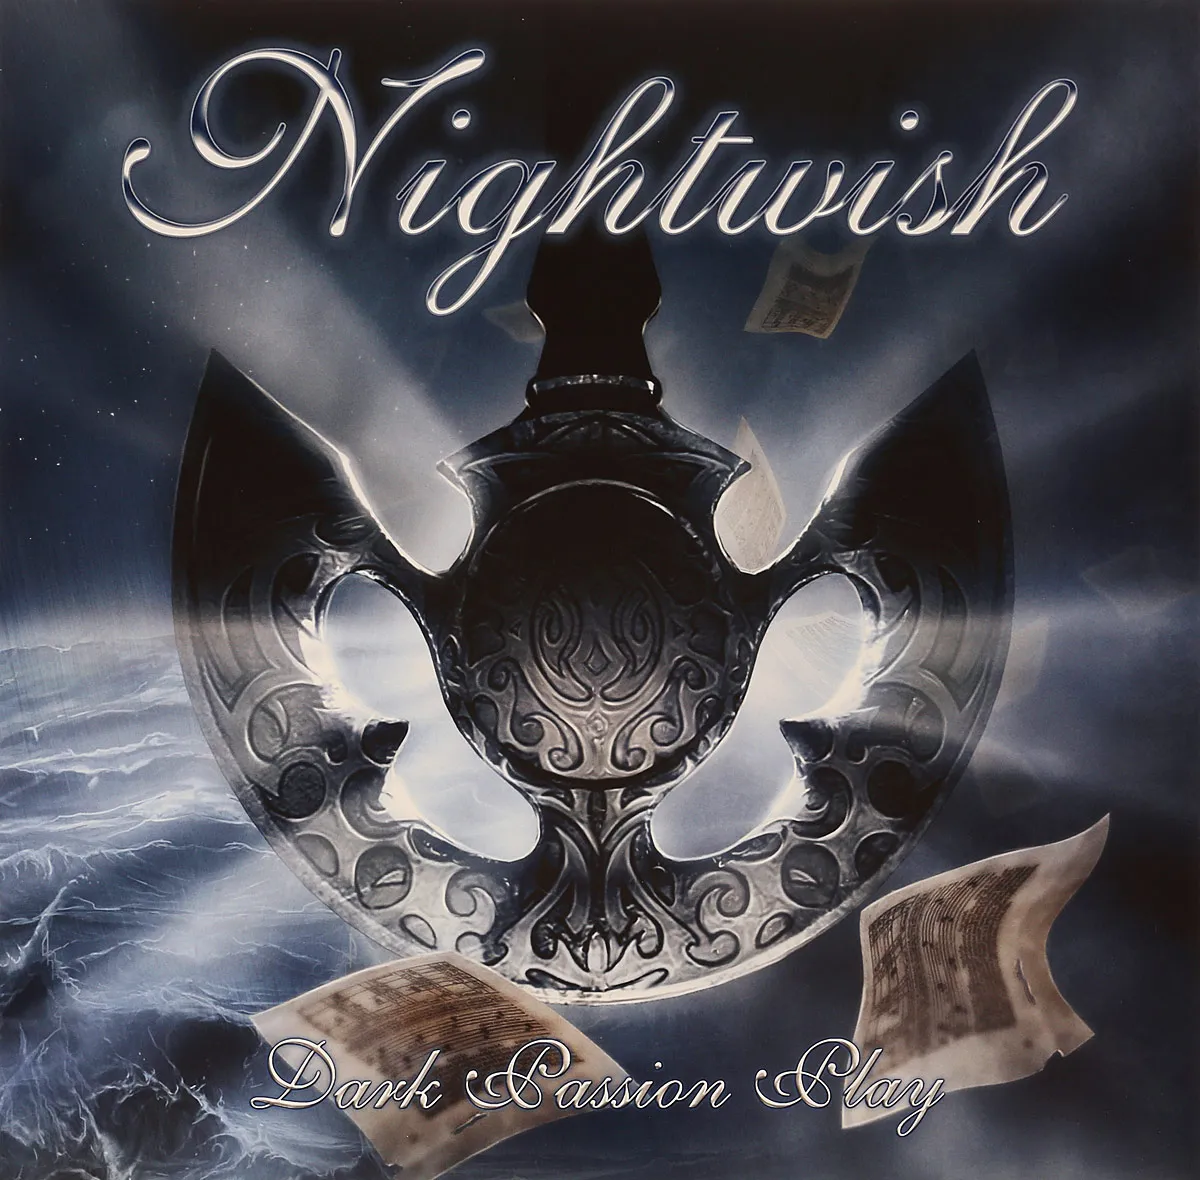 Металл Nuclear Blast Nightwish - Dark Passion Play (180 Gram Black Vinyl 2LP) металл nuclear blast nightwish dark passion play 180 gram black vinyl 2lp